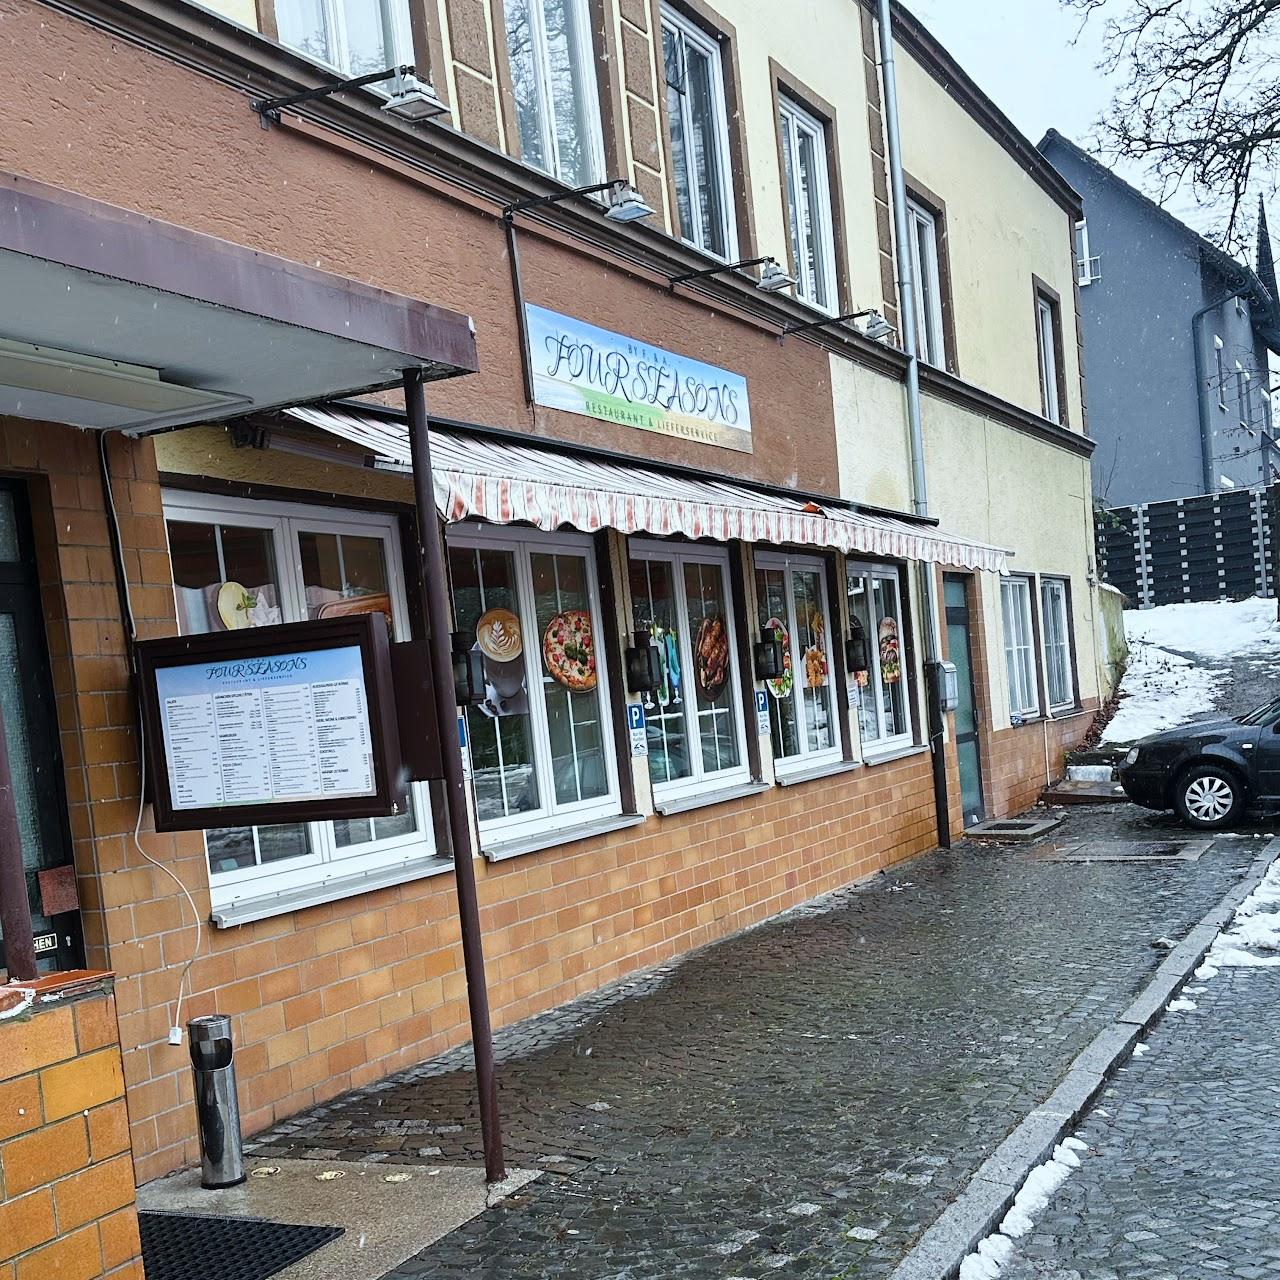 Restaurant "Four Seasons FA" in Kaufbeuren